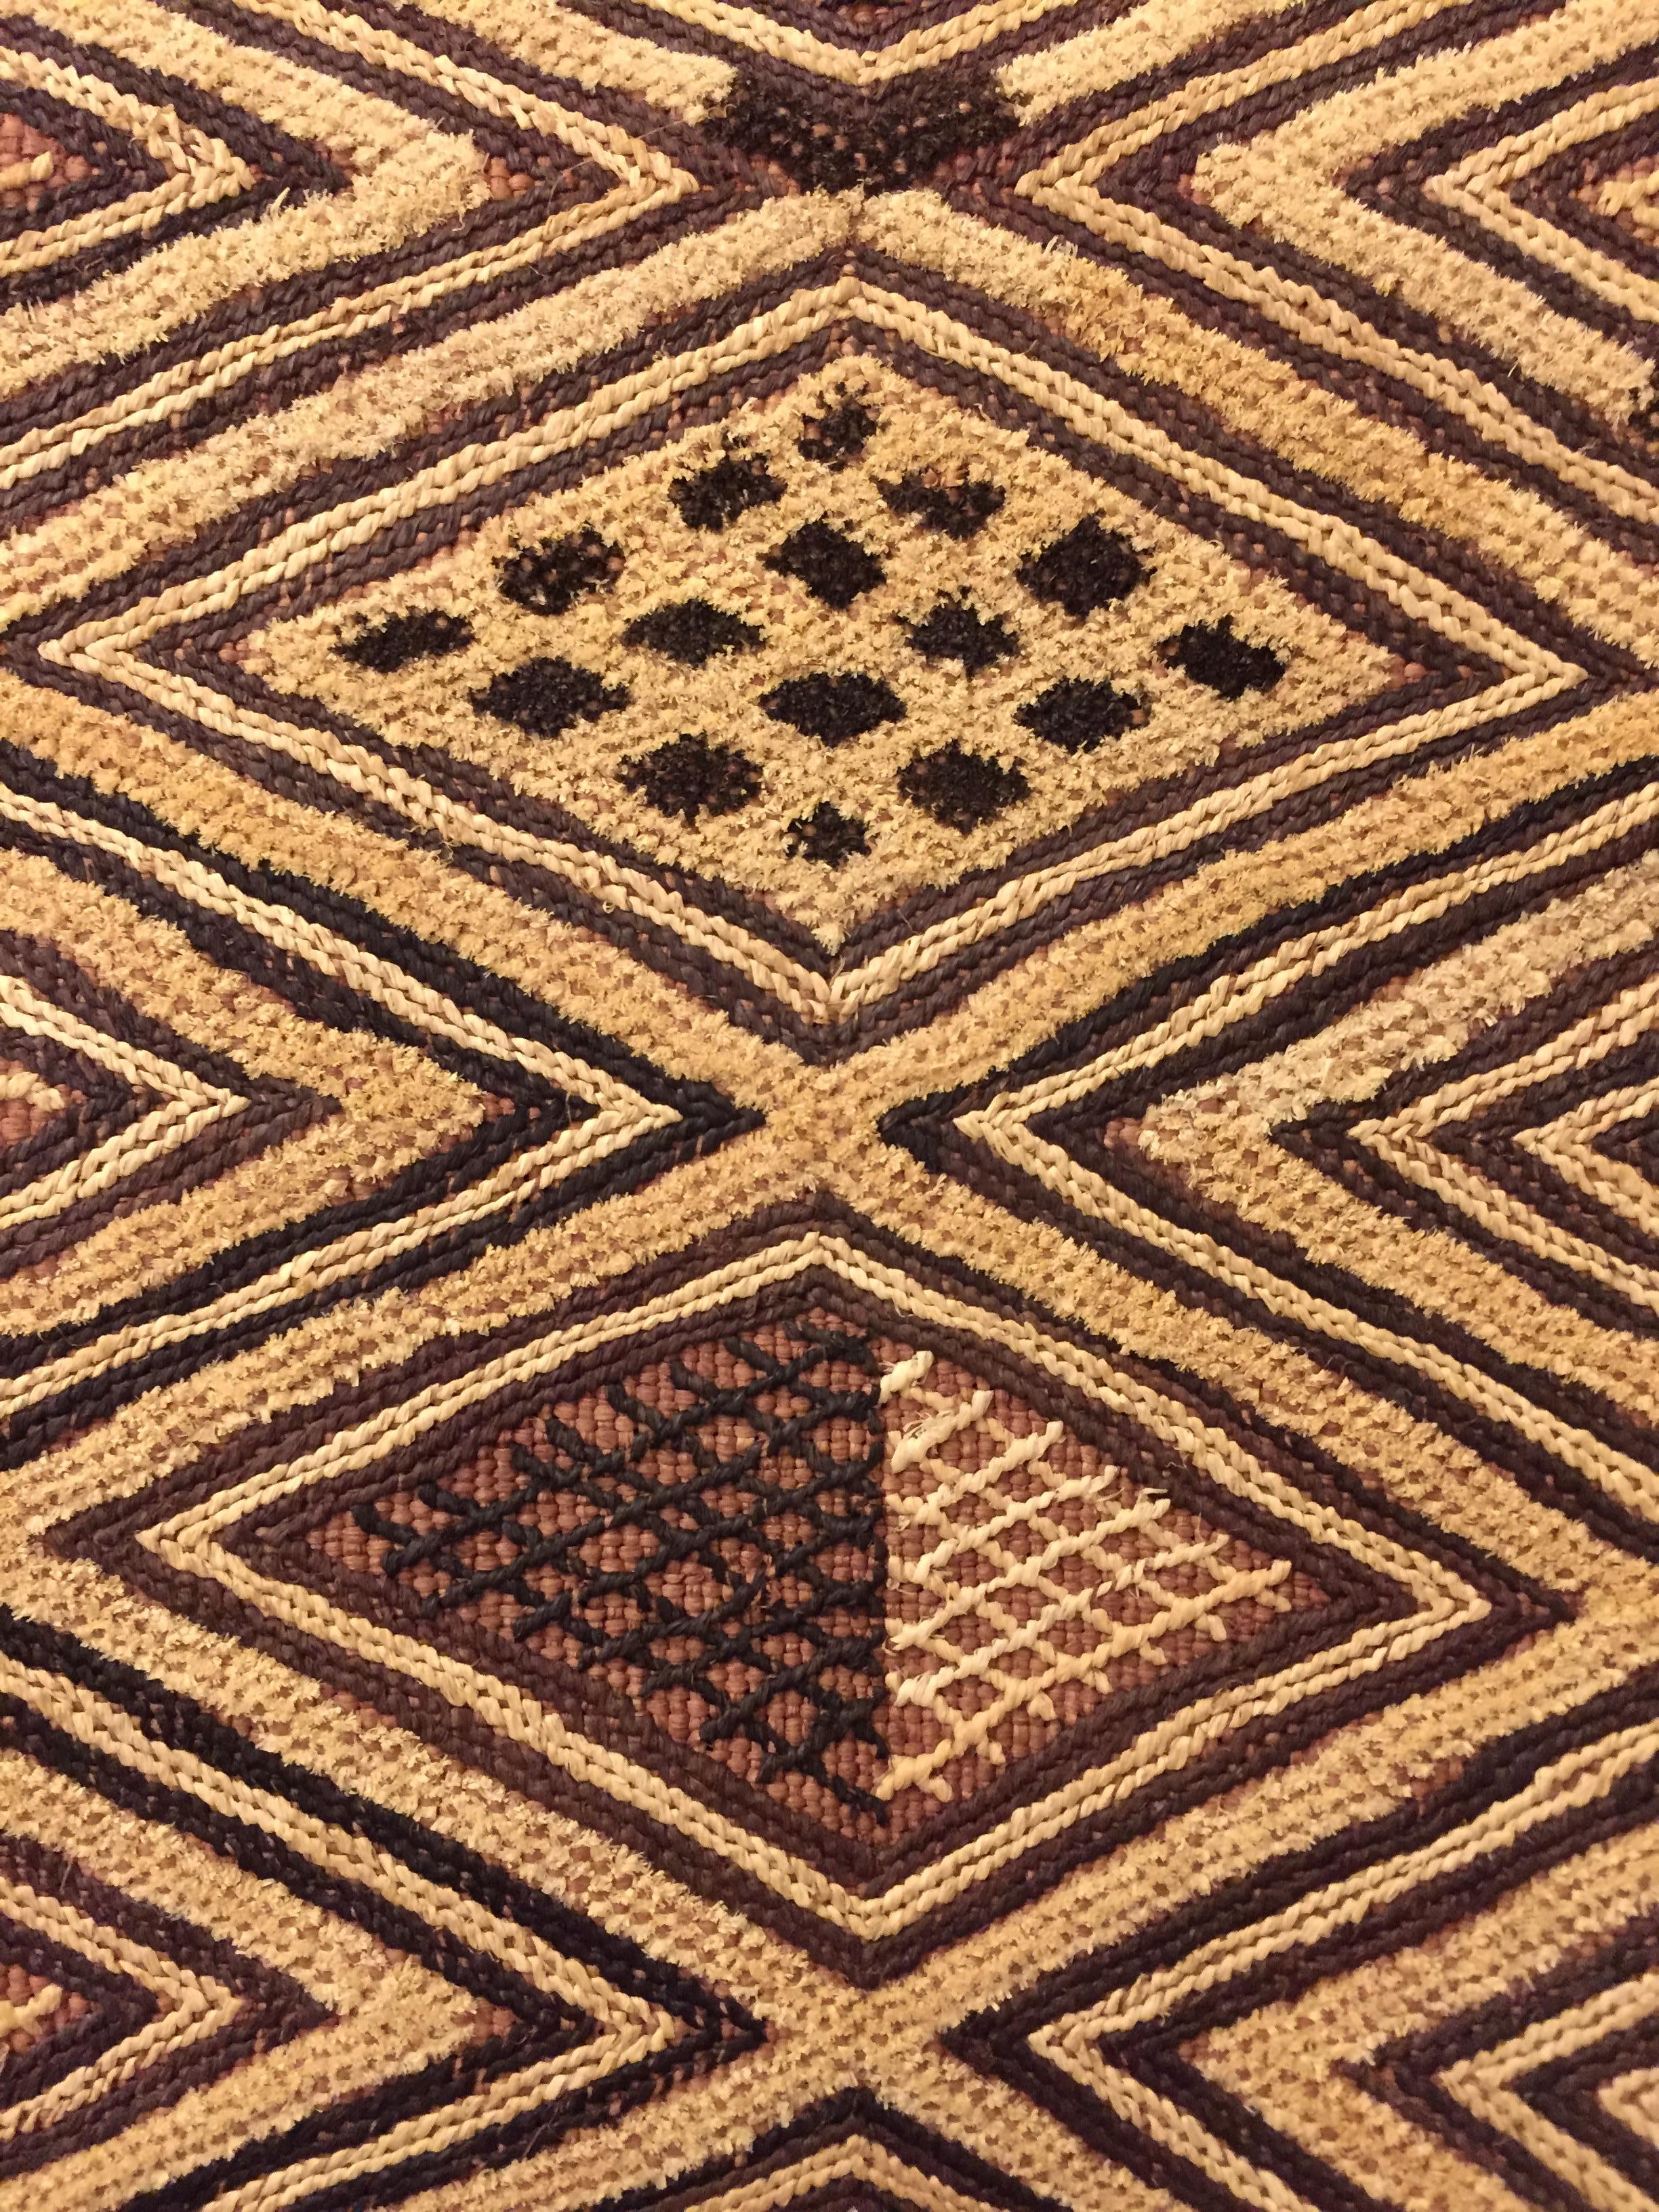 Congolese Kuba, Shoowa African Tribal Art Textile with 